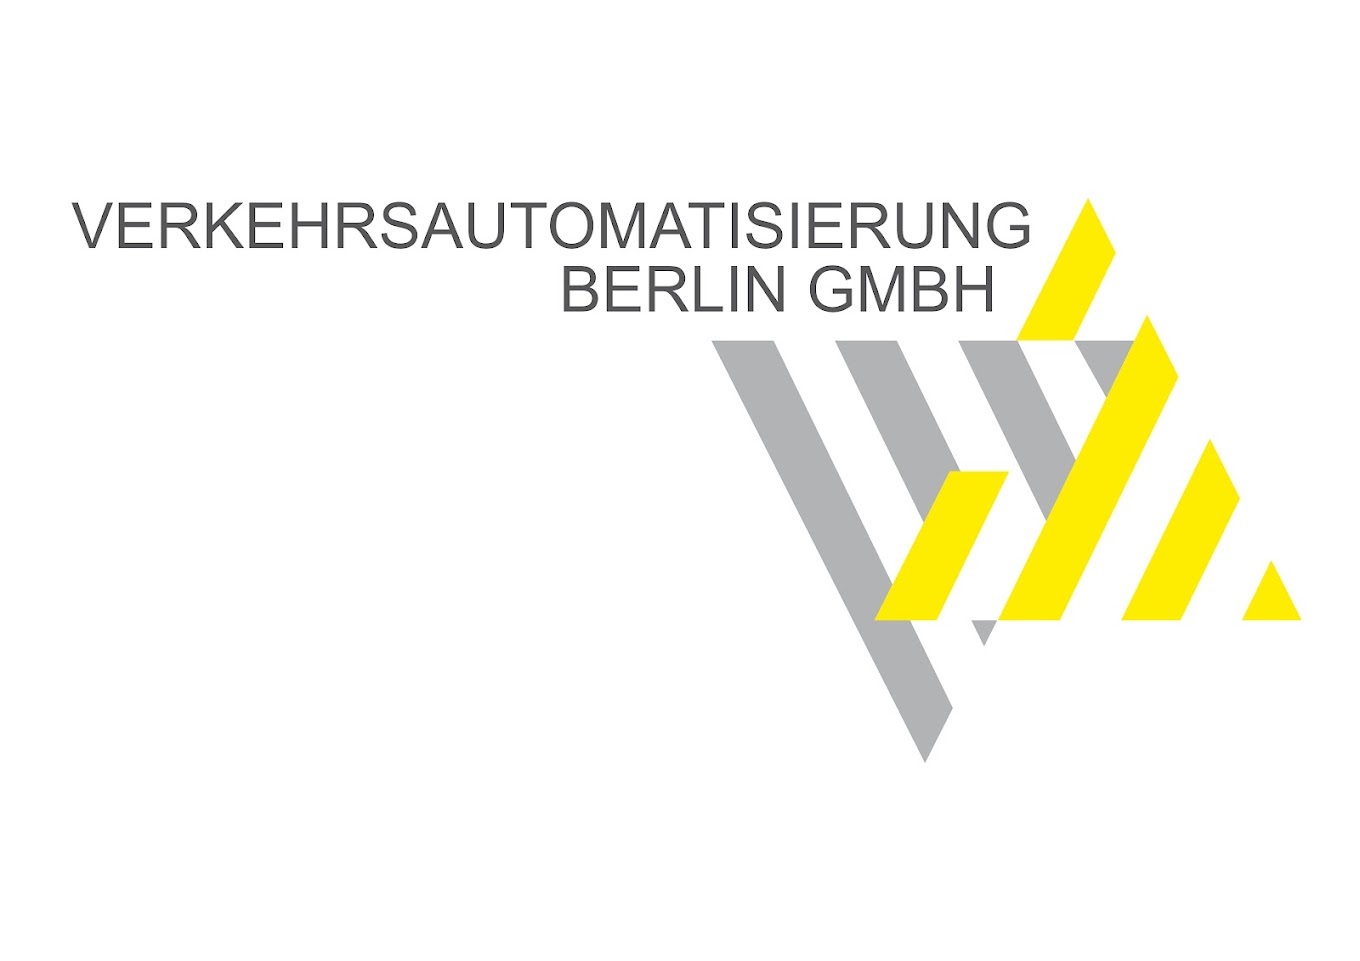 Verkehrsautomatisierung berlin logo